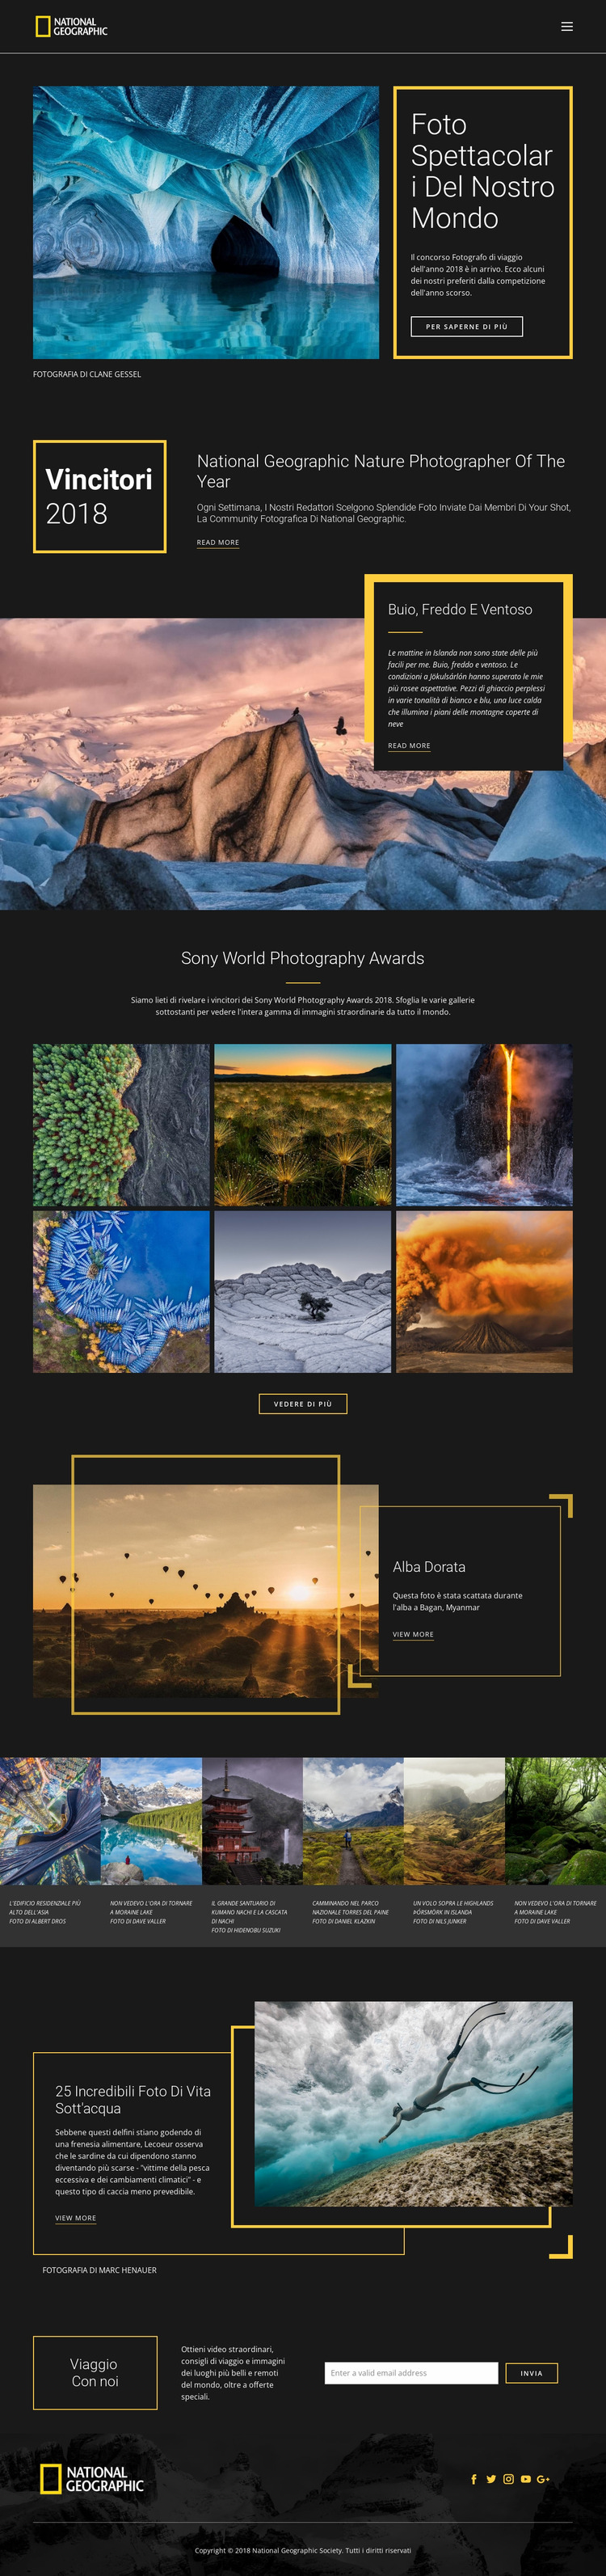 Immagini della natura Modello Joomla